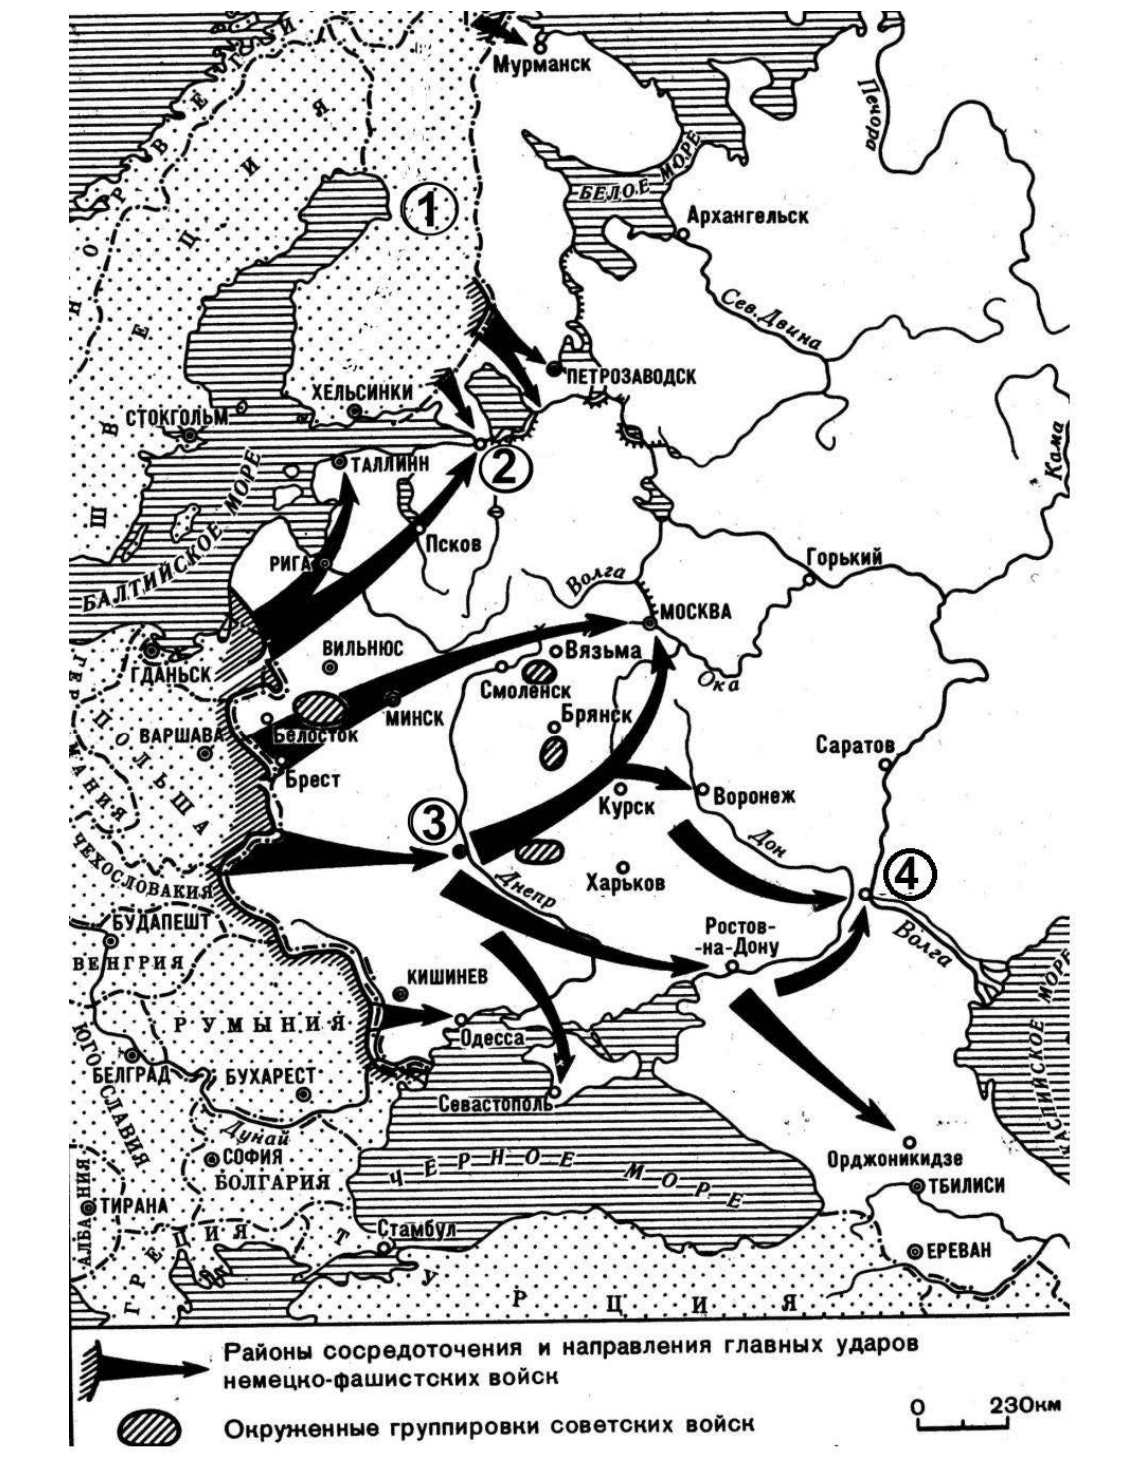 Нападение на советский союз 1941. Карта наступления фашистов на СССР 1941. Карта плана Барбаросса 1941. План нападения фашистской Германии 1941. План нападения СССР на Германию в 1941.